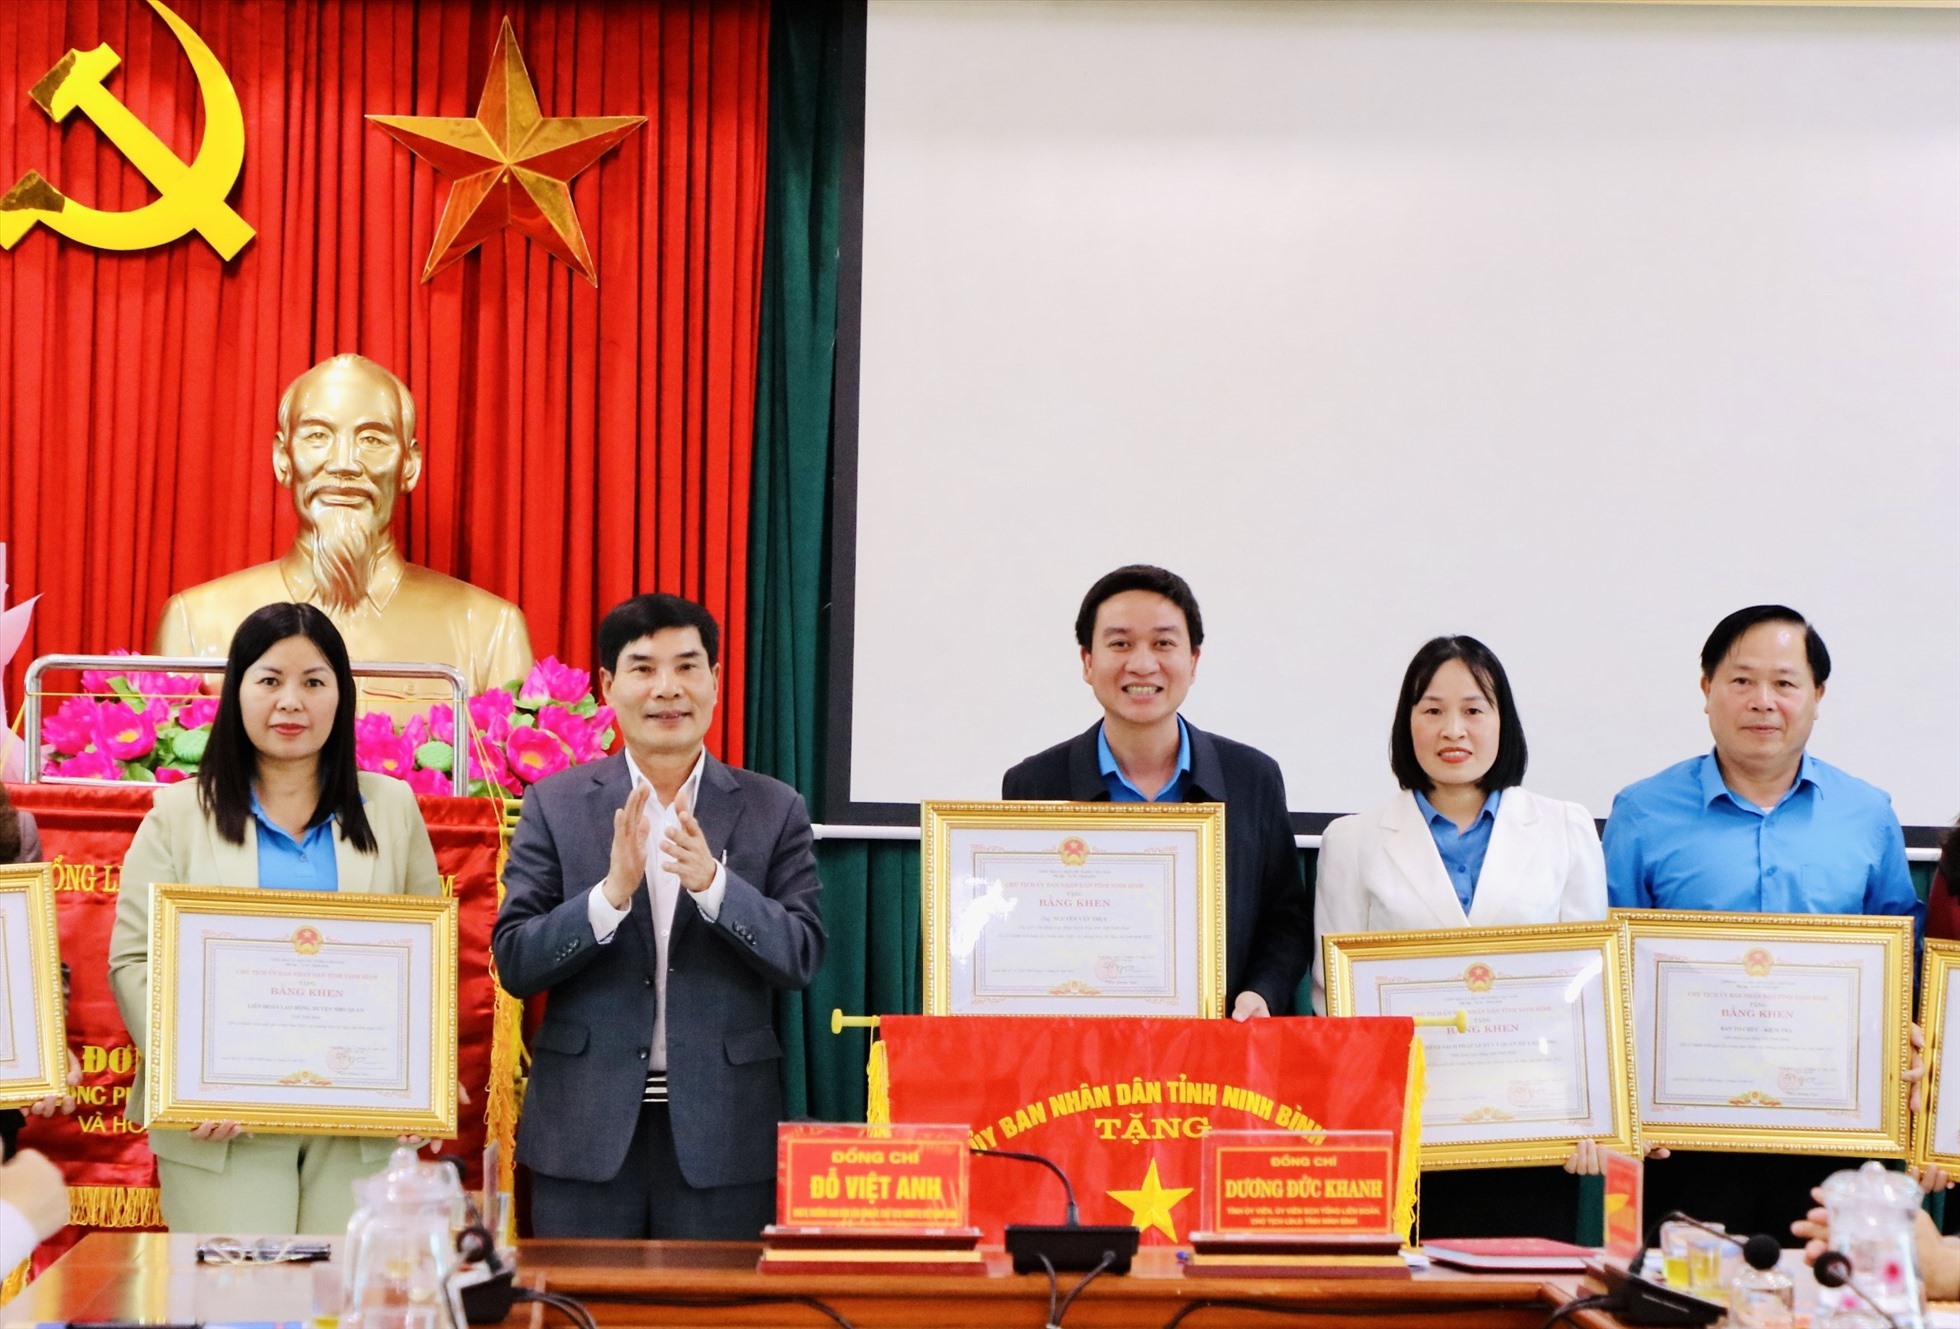 Trao Bằng khen và cờ thi đua của UBND tỉnh Ninh Bình cho các tập thể có thành tích xuất sắc trong các phong trào thi đua. Ảnh: Diệu Anh